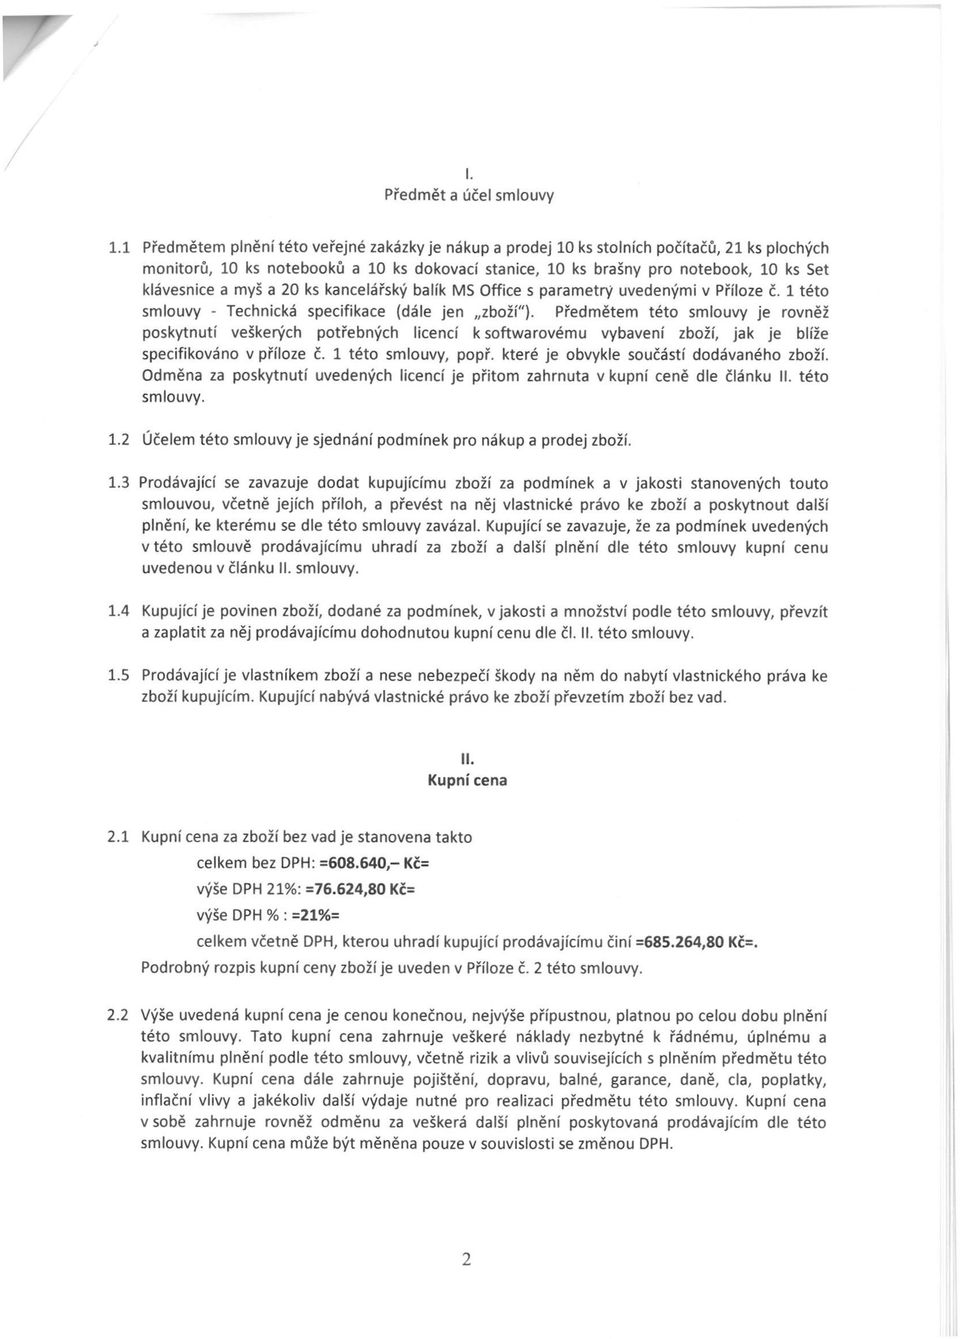 kanelářský balík MS ffie s parametry uvedenými v Přílze č. 1 tét smluvy - Tehniká speifikae (dále jen zbží").